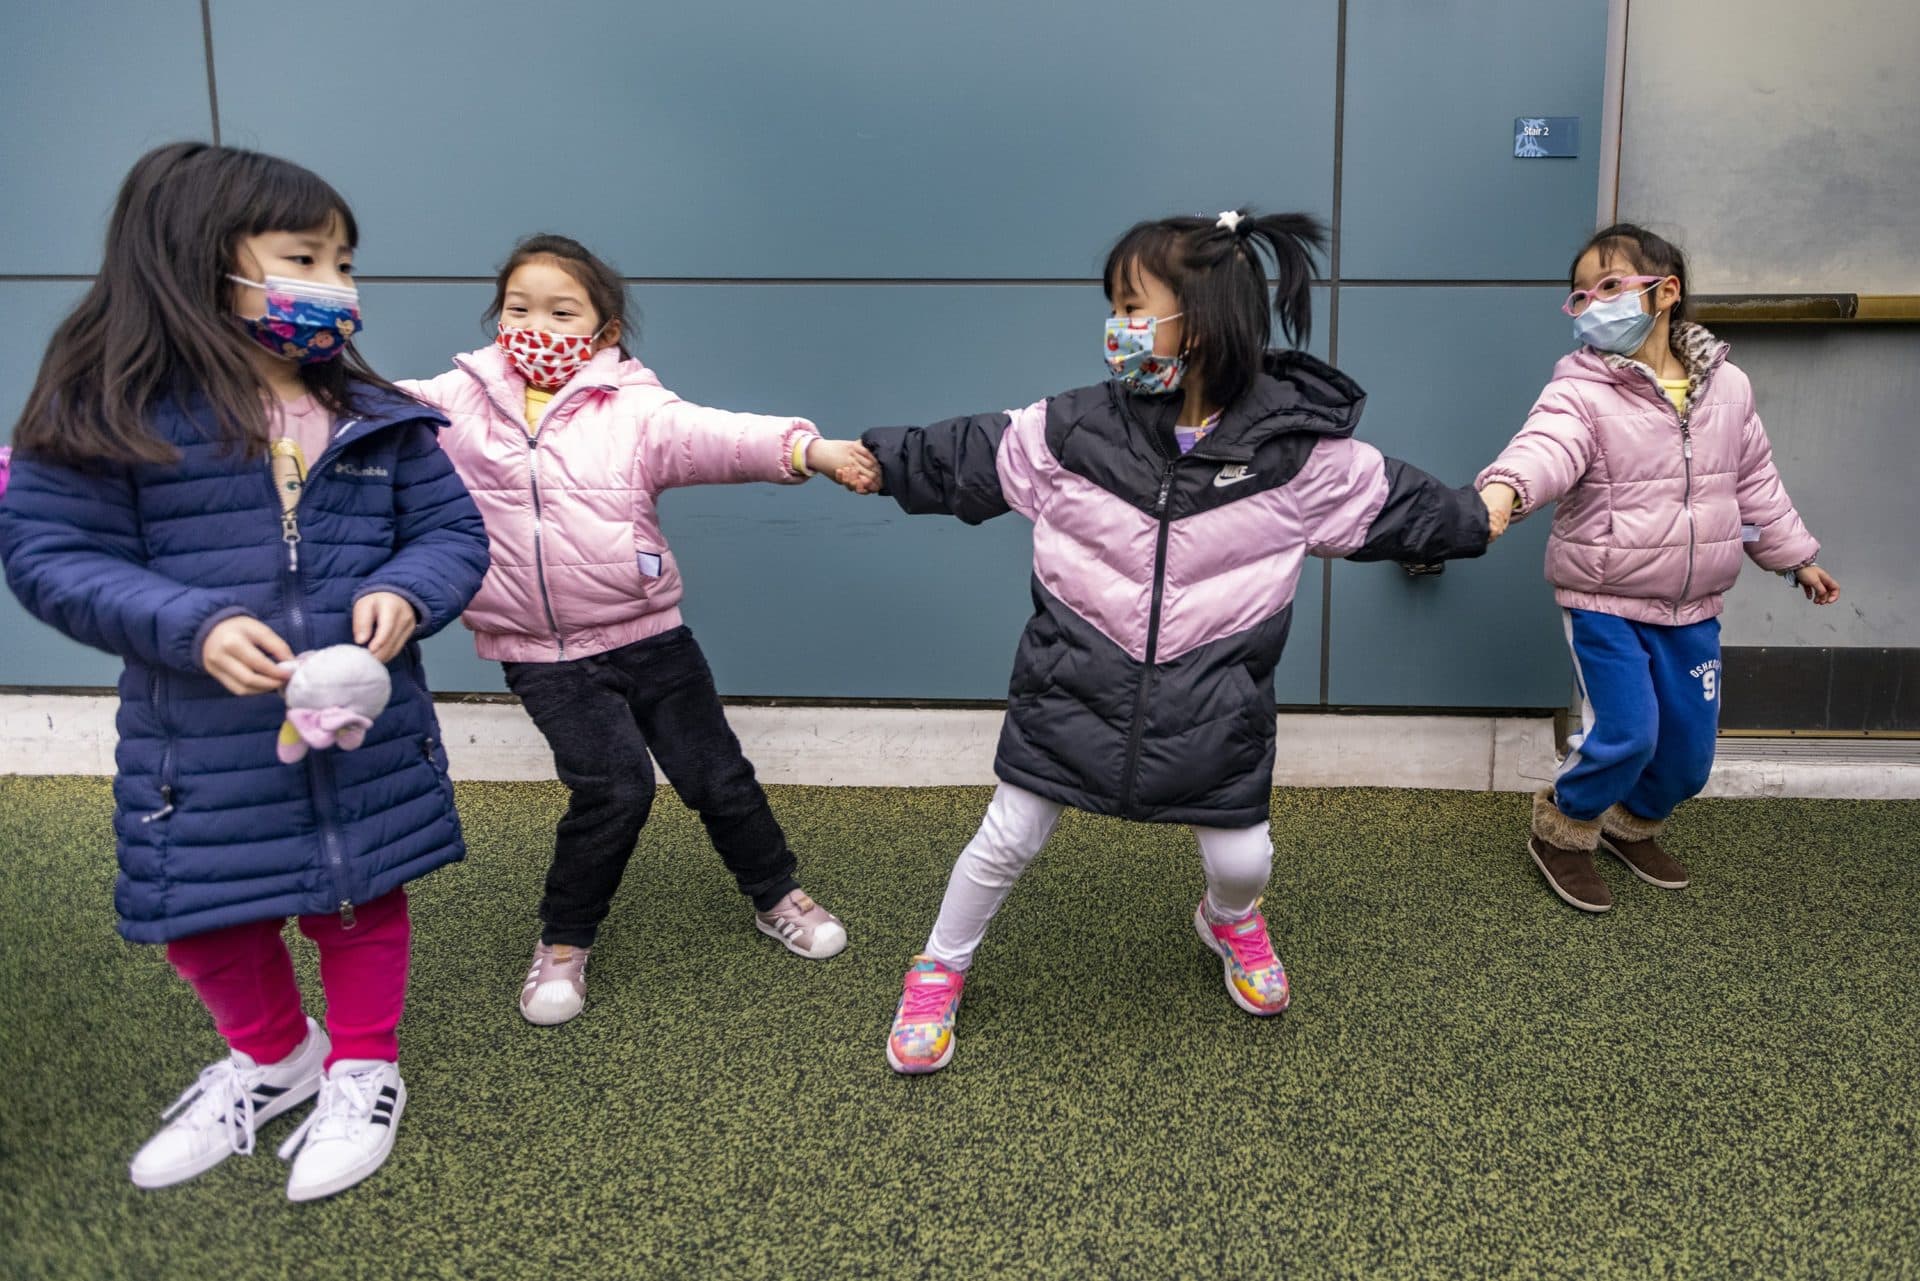 Children play at the Boston Chinatown Neighborhood Center. (Jesse Costa/WBUR)